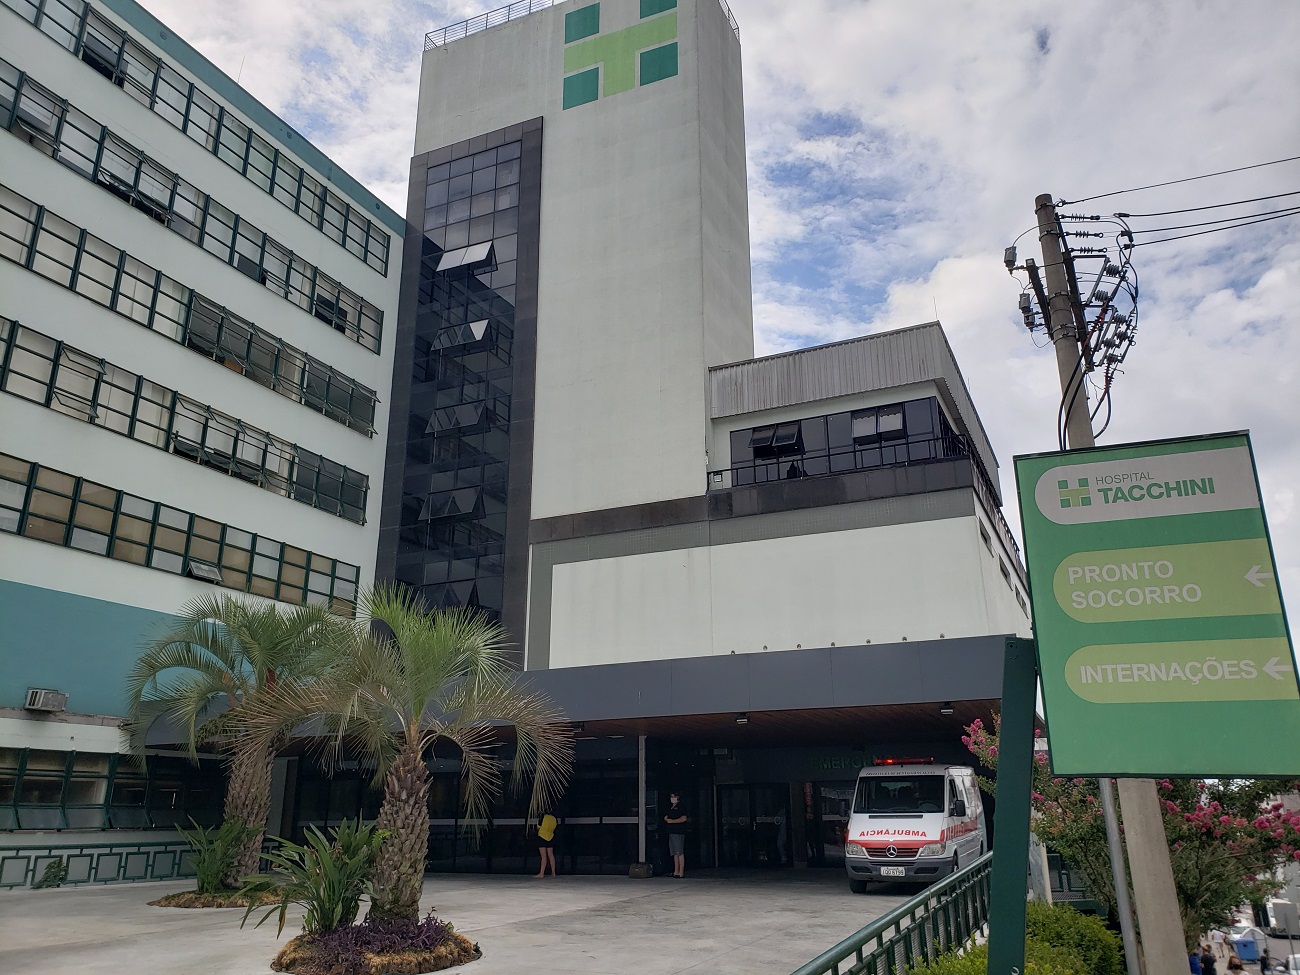 Hospital Tacchini abre 62 vagas de trabalho para equipe de